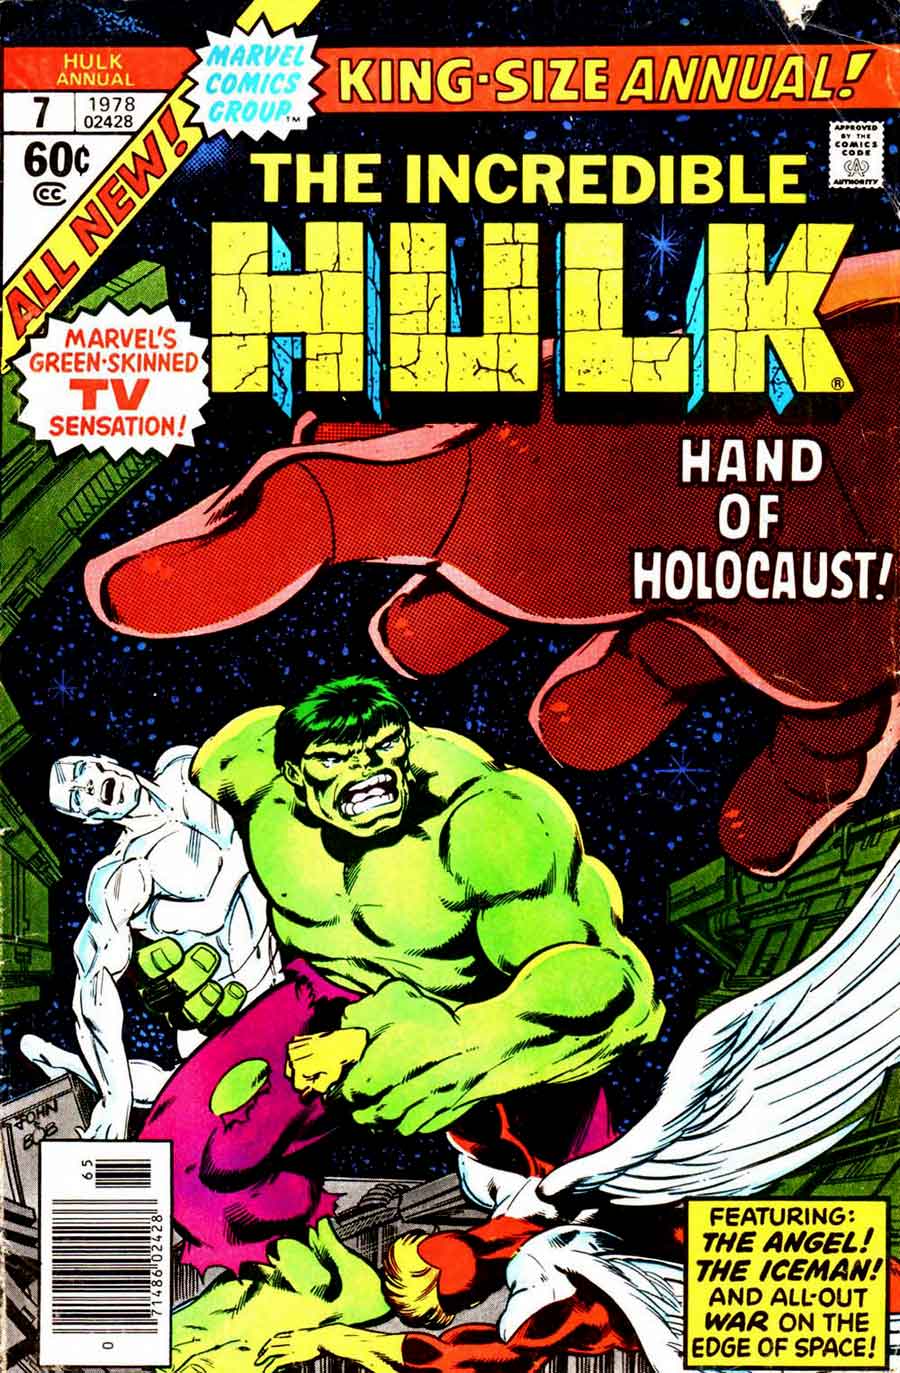 Incredible Hulk v2 annual #7 marvel comic book cover art by John Byrne